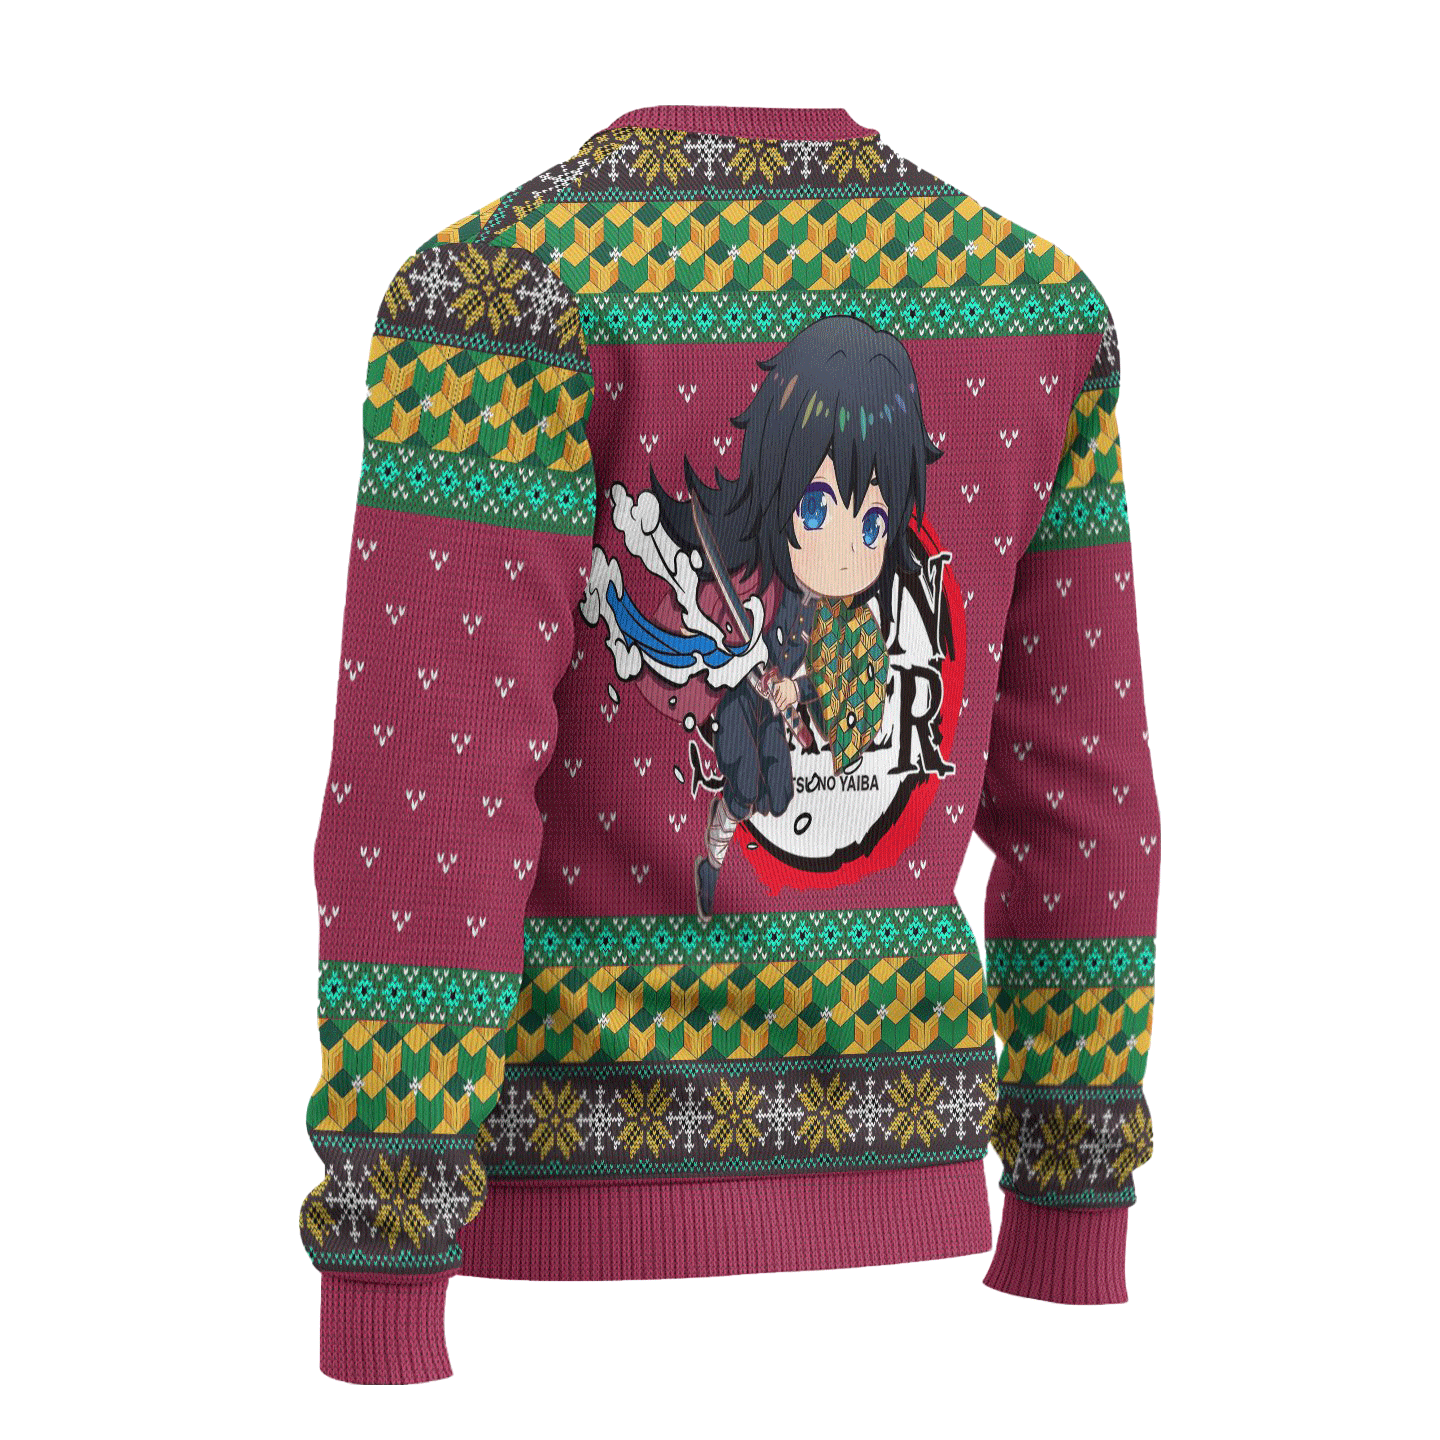 Giyuu Tomioka Demon Slayer Anime Ugly Christmas Sweater Xmas Gift